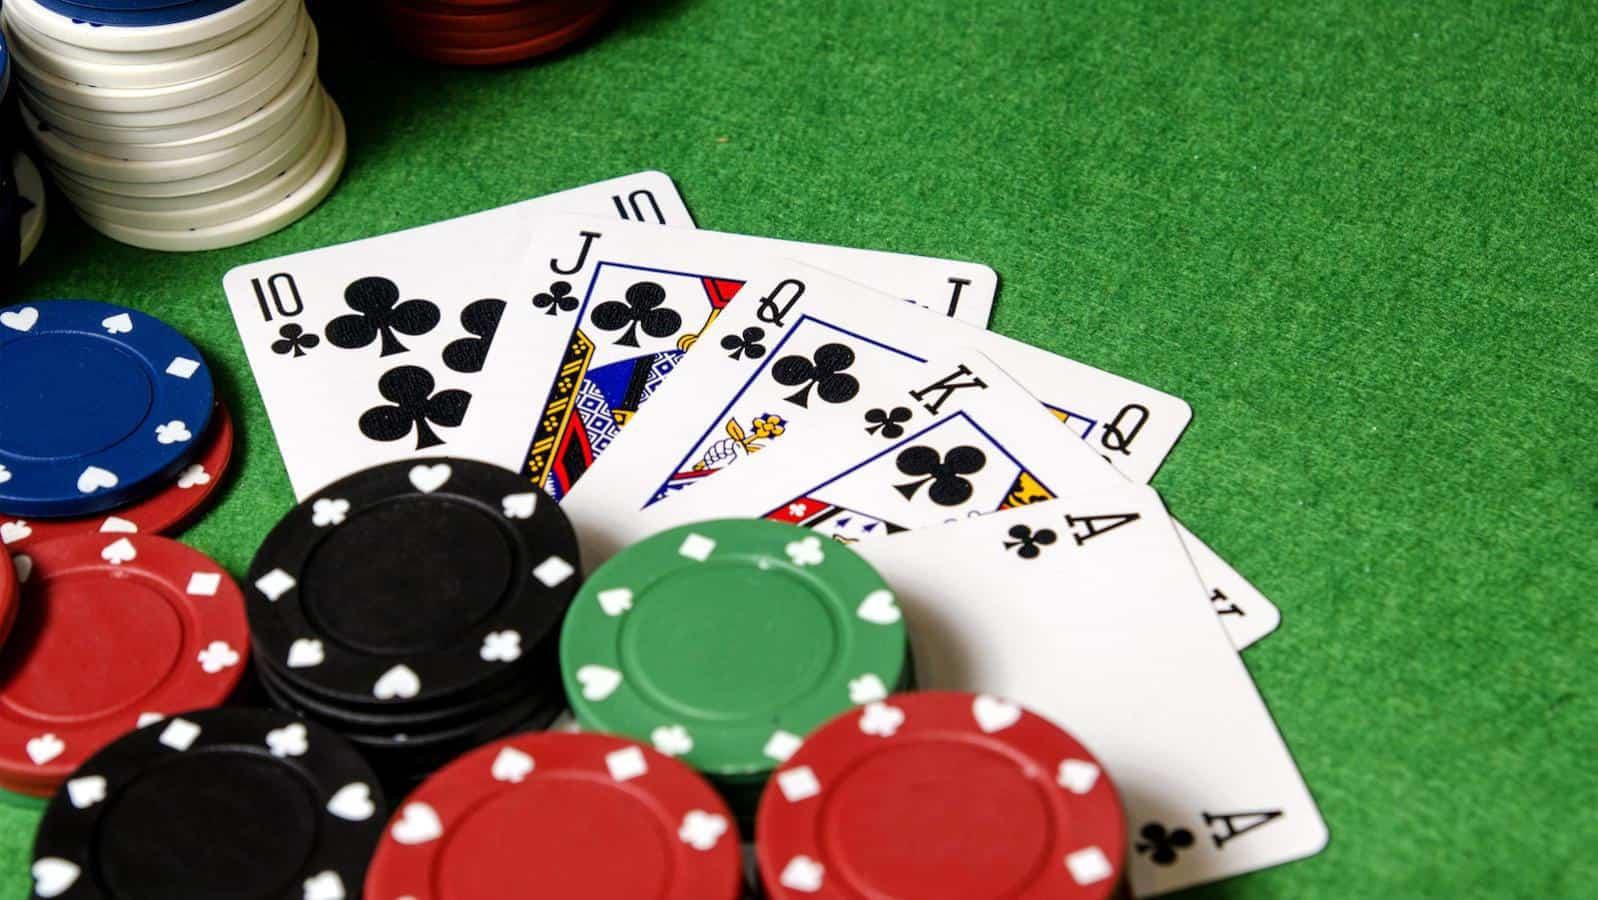 Che giấu hành vi đánh bạc trái phép sẽ bị xử lý thế nào?